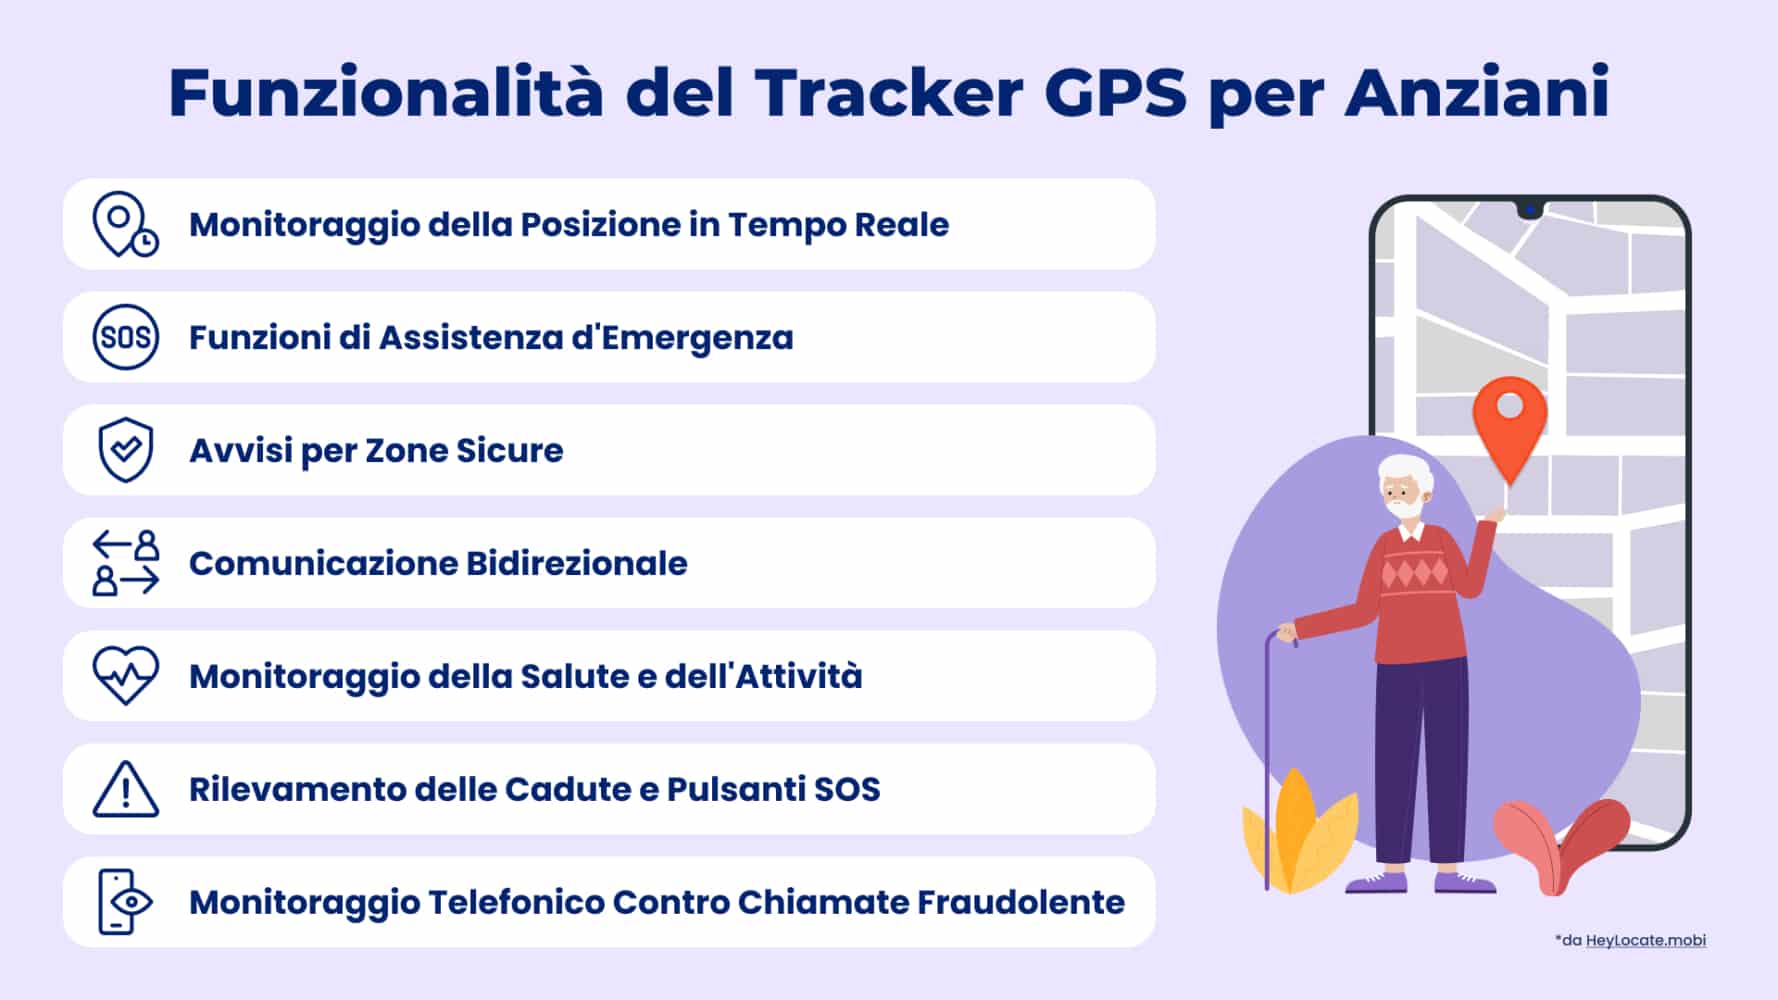 Elenco delle principali caratteristiche dei localizzatori GPS per anziani mostrato nell'infografica di HeyLocate
